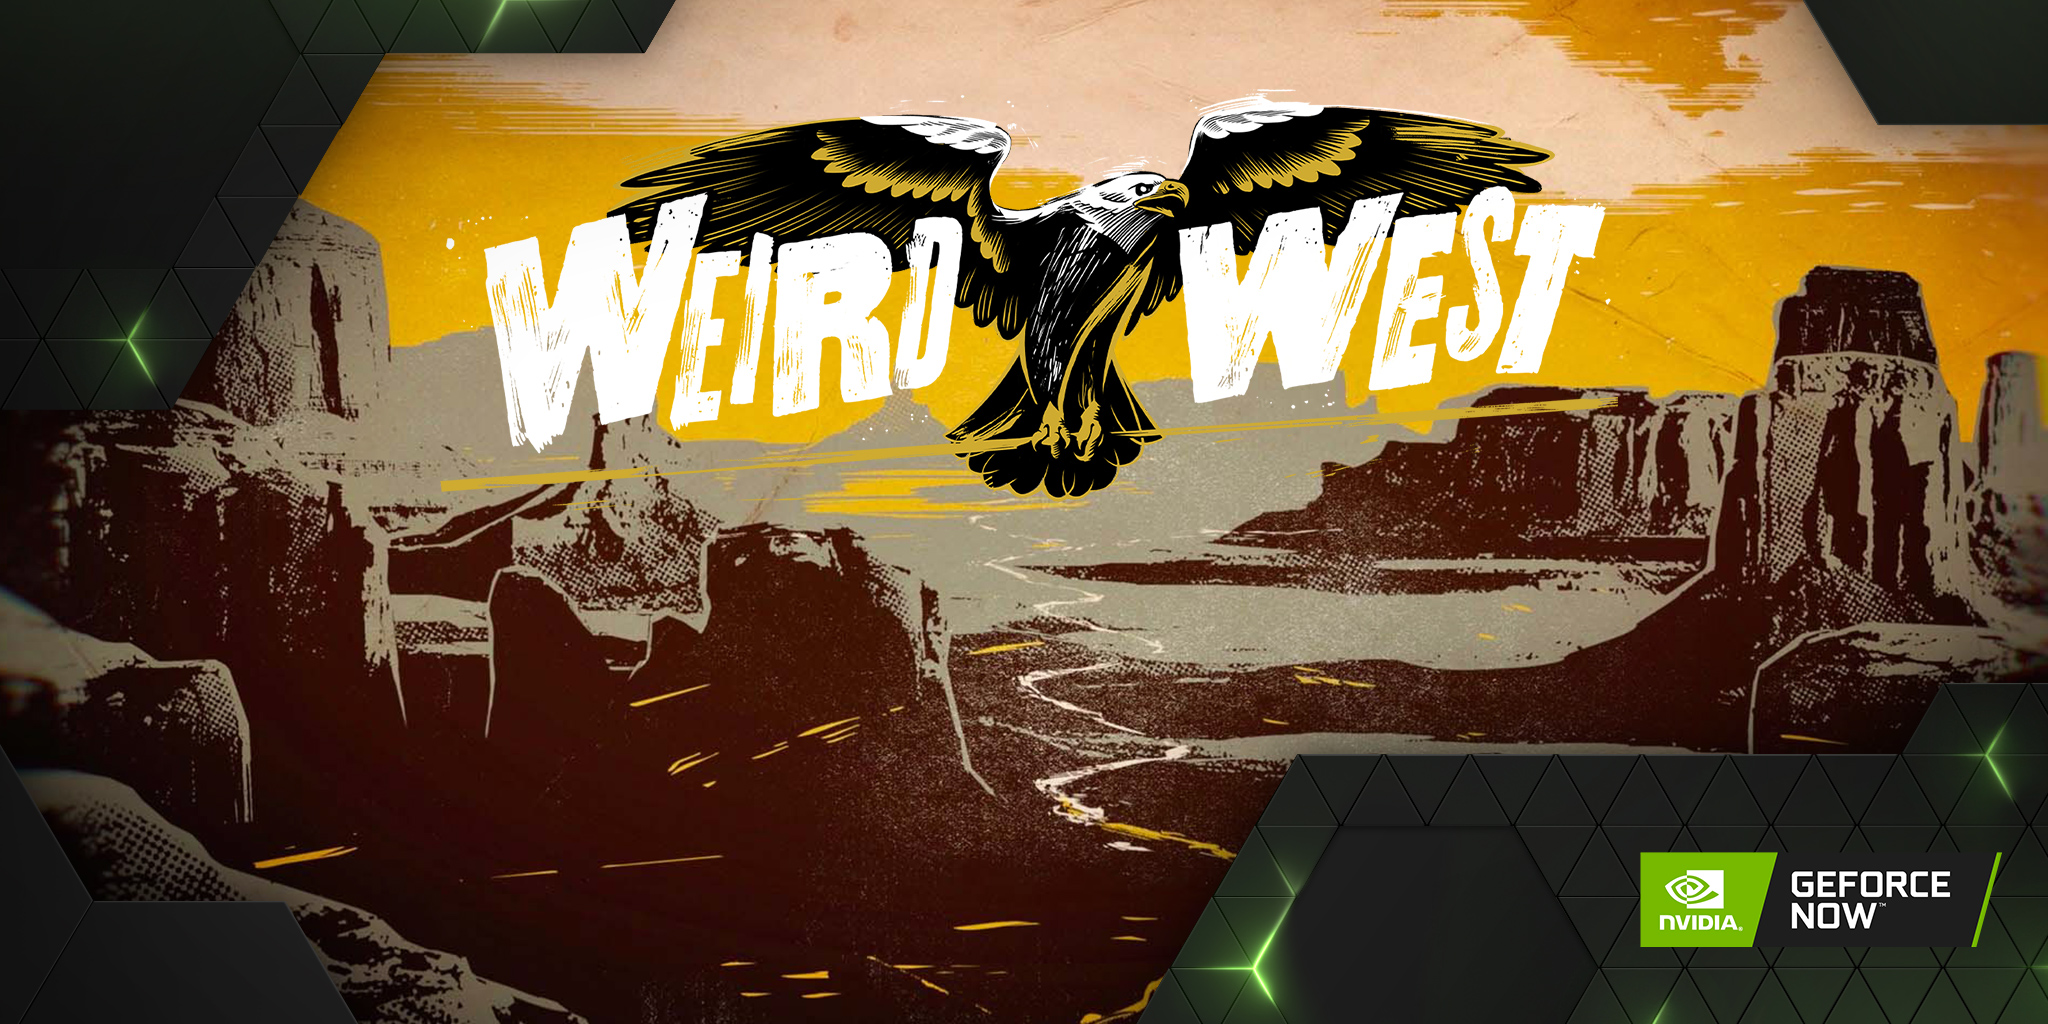 GFN Thursday Weird West